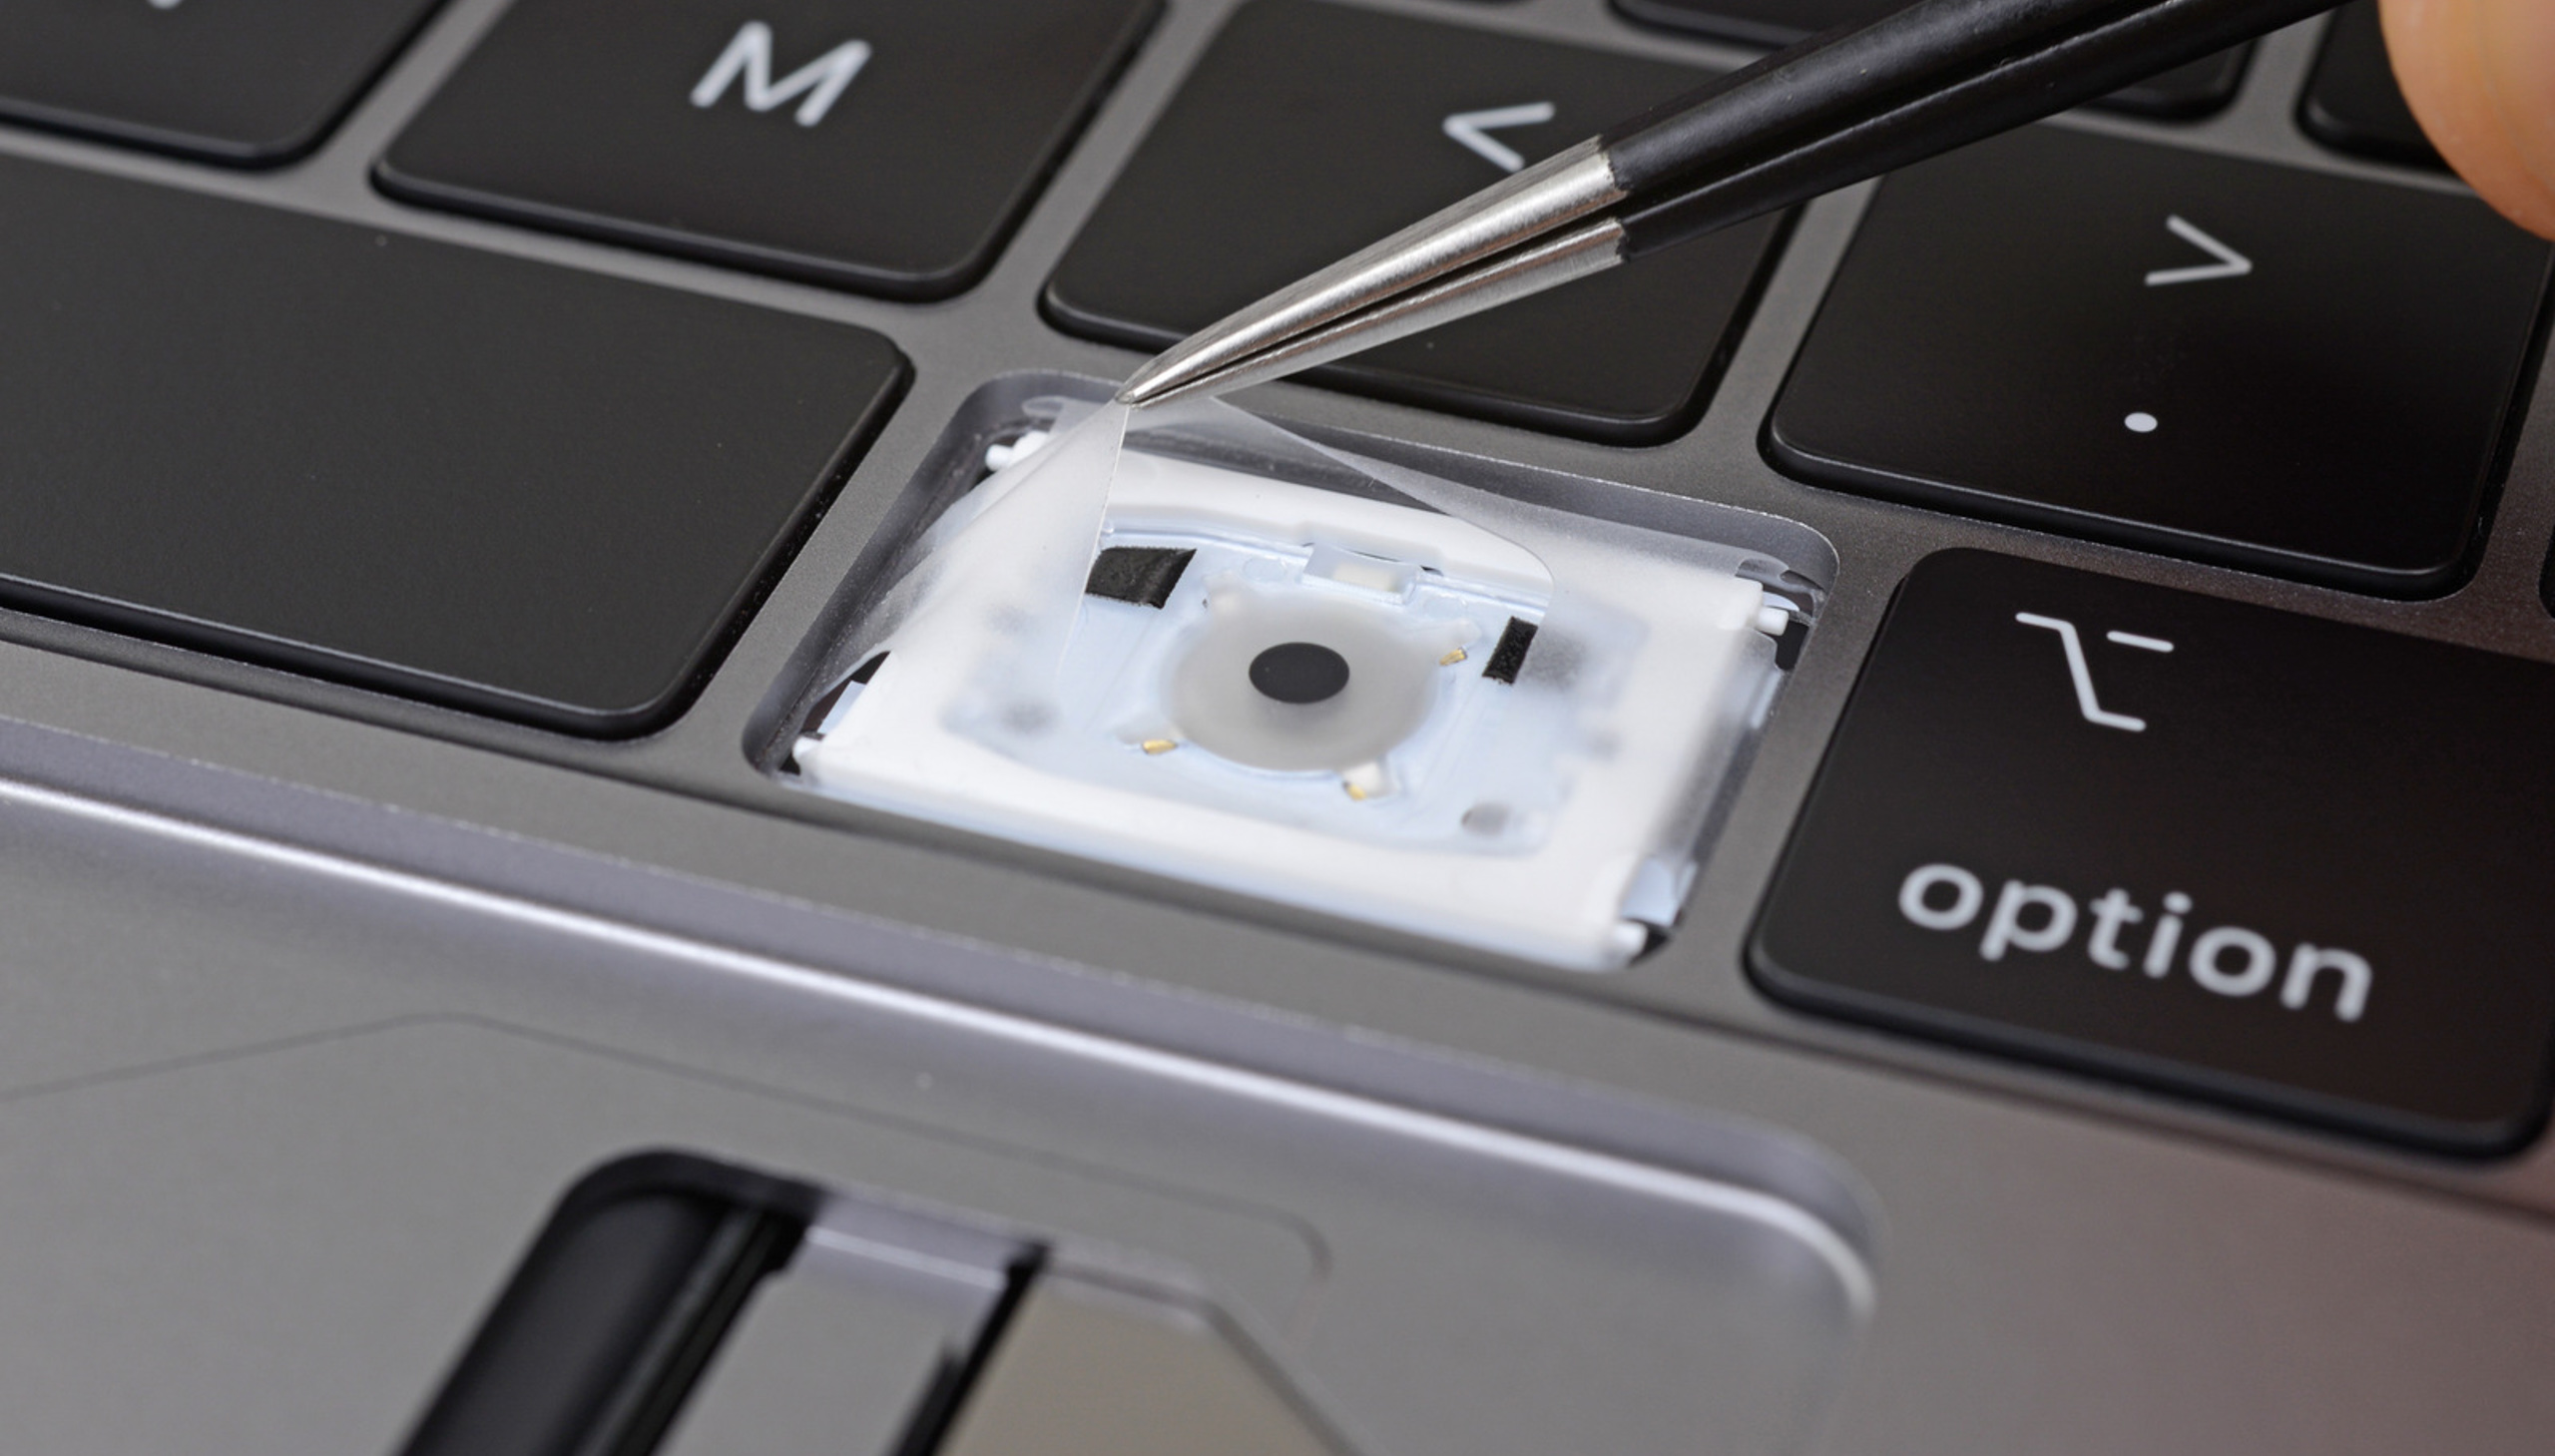 Khắc phục “tạm thời” lỗi gõ hai lần trên bàn phím cánh bướm của MacBook bằng phần mềm Unshaky